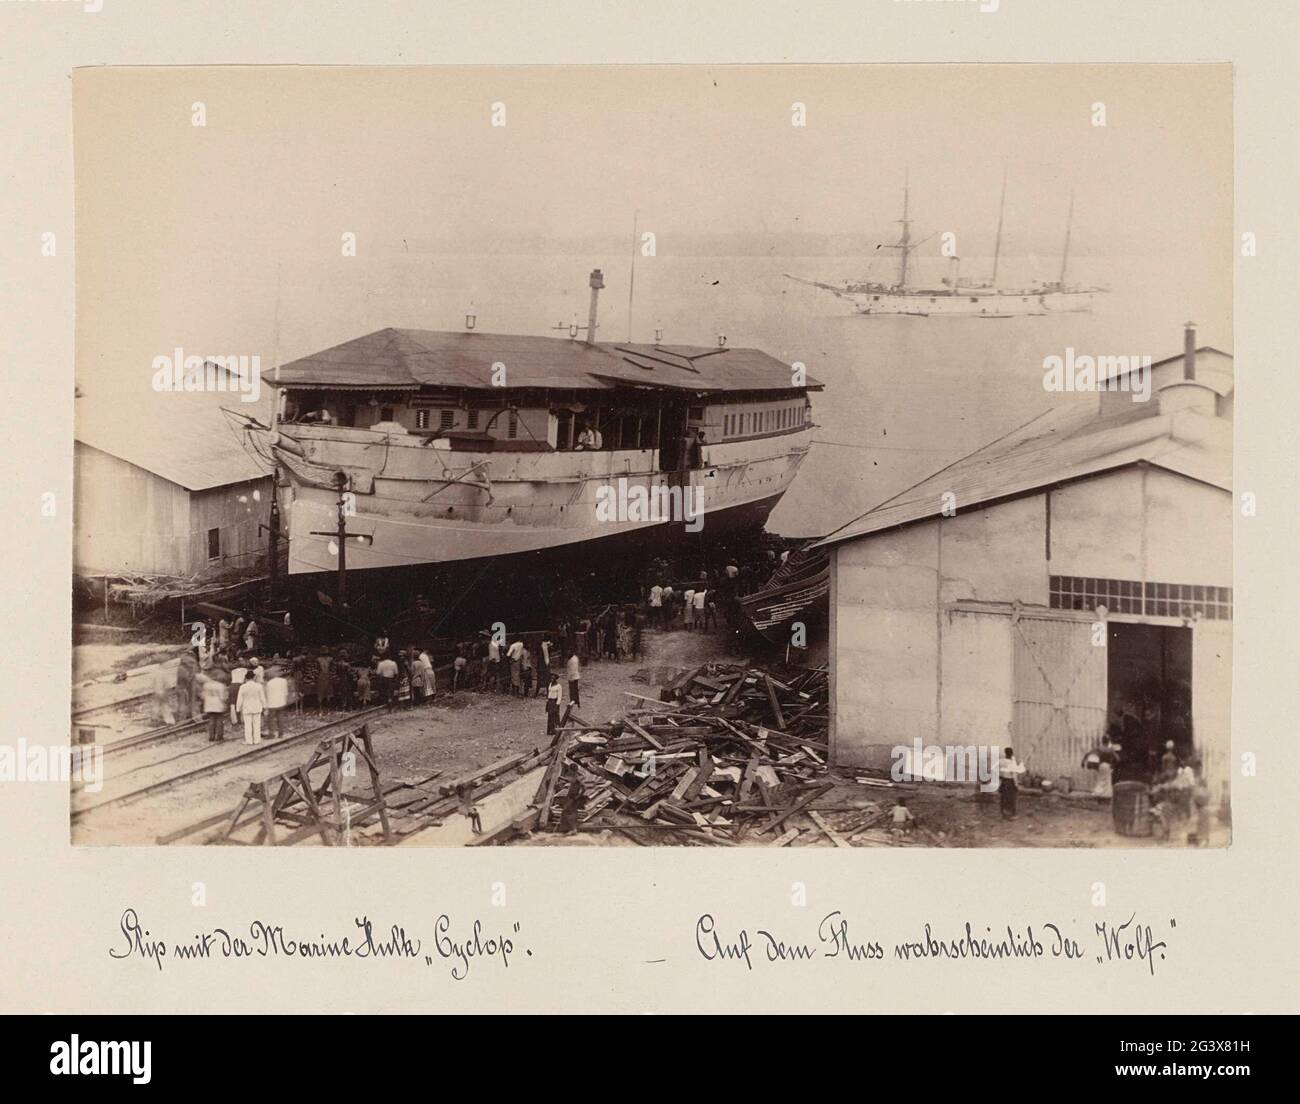 Meereshang in Kamerun mit den Schiffen 'Cyclop' und (vermutlich) 'Wolf'. Der 'Cyclop' war (wahrscheinlich) ein sogenannter 'Hulk', ein ausrangiertes Schiff, das nicht seetüchtig war und als Handelsposten diente. Teil des Fotoalbums mit Aufnahmen von Kamerun um 1899. Stockfoto